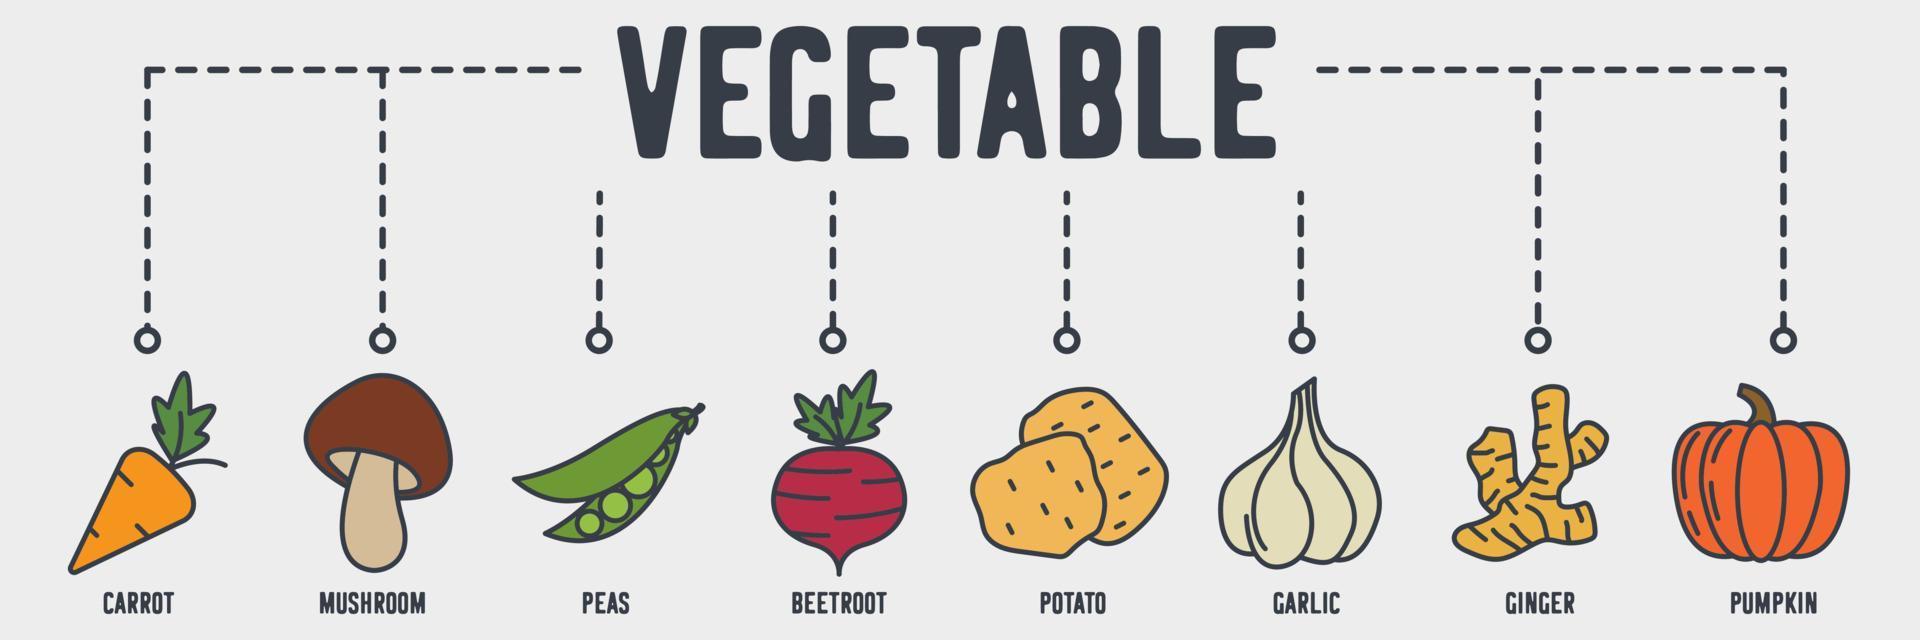 icona web banner vegetale vegetariano. concetto di illustrazione vettoriale di carote, funghi, piselli, barbabietole, patate, aglio, zenzero, zucca.